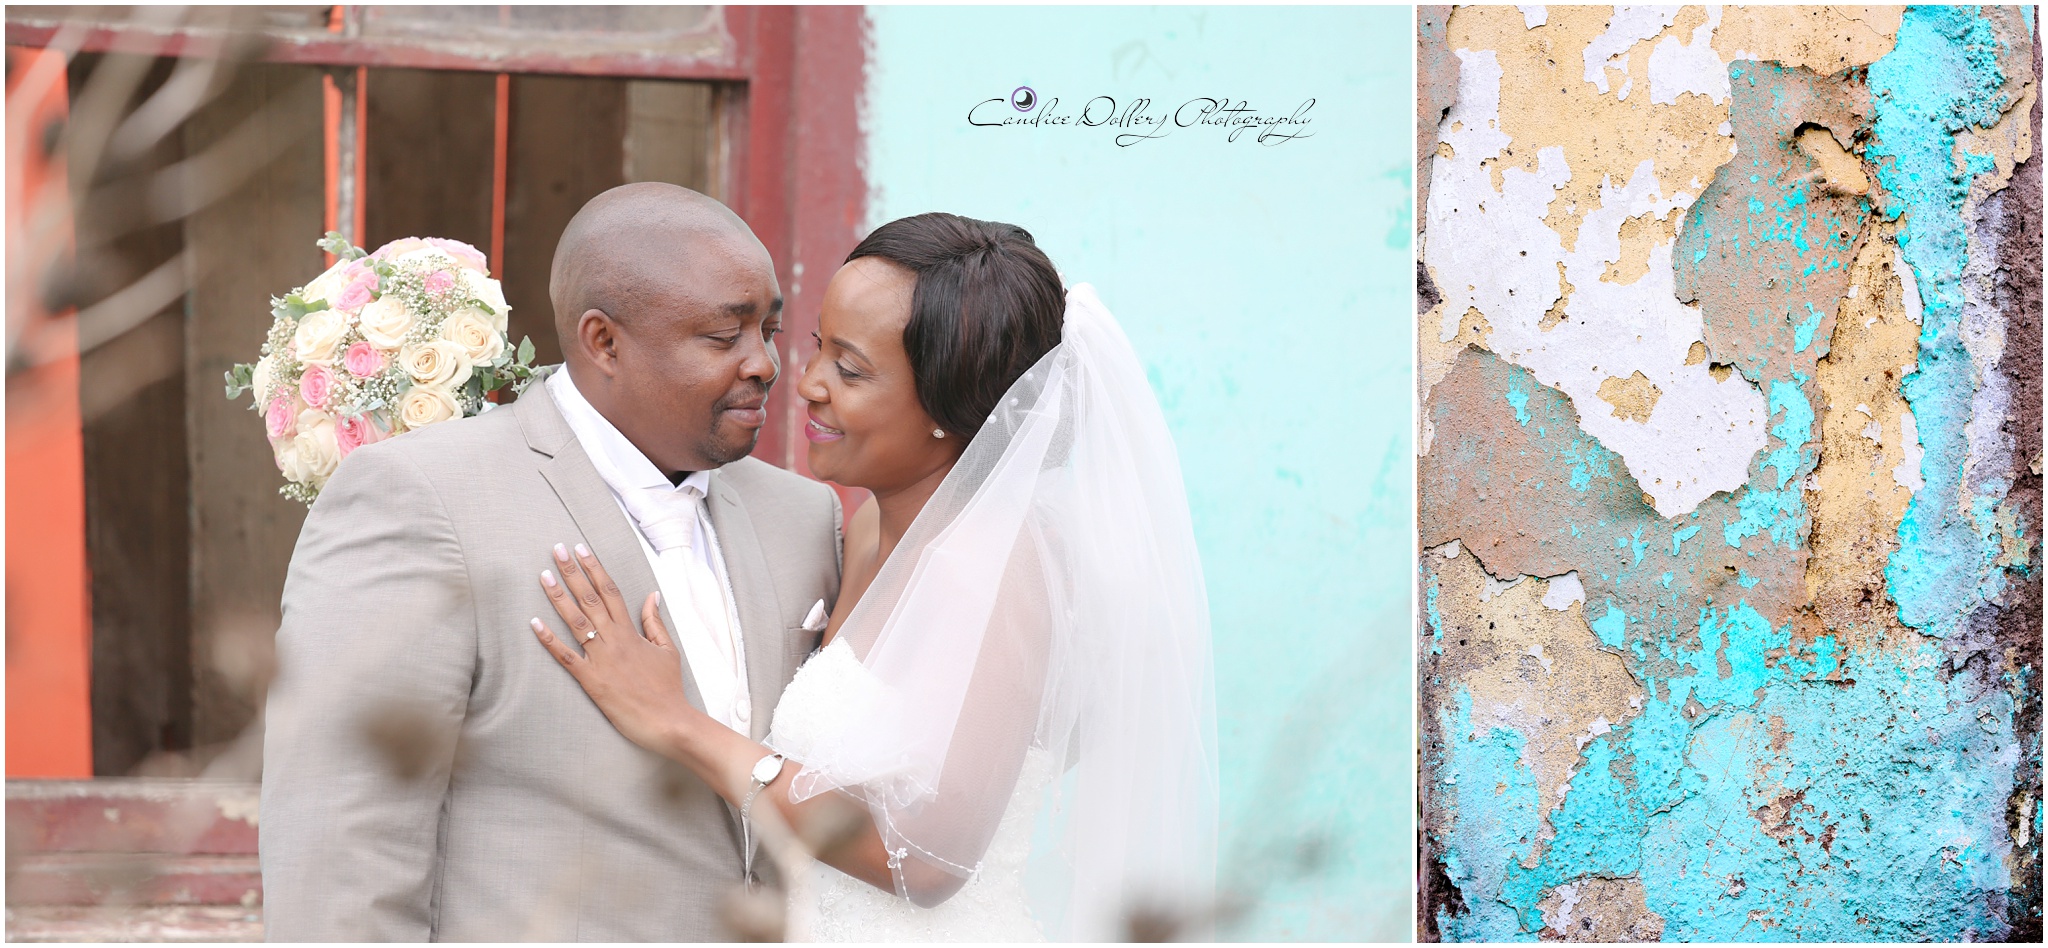 Masivuye & Khuselo's Wedding - Candice Dollery Photography_7279